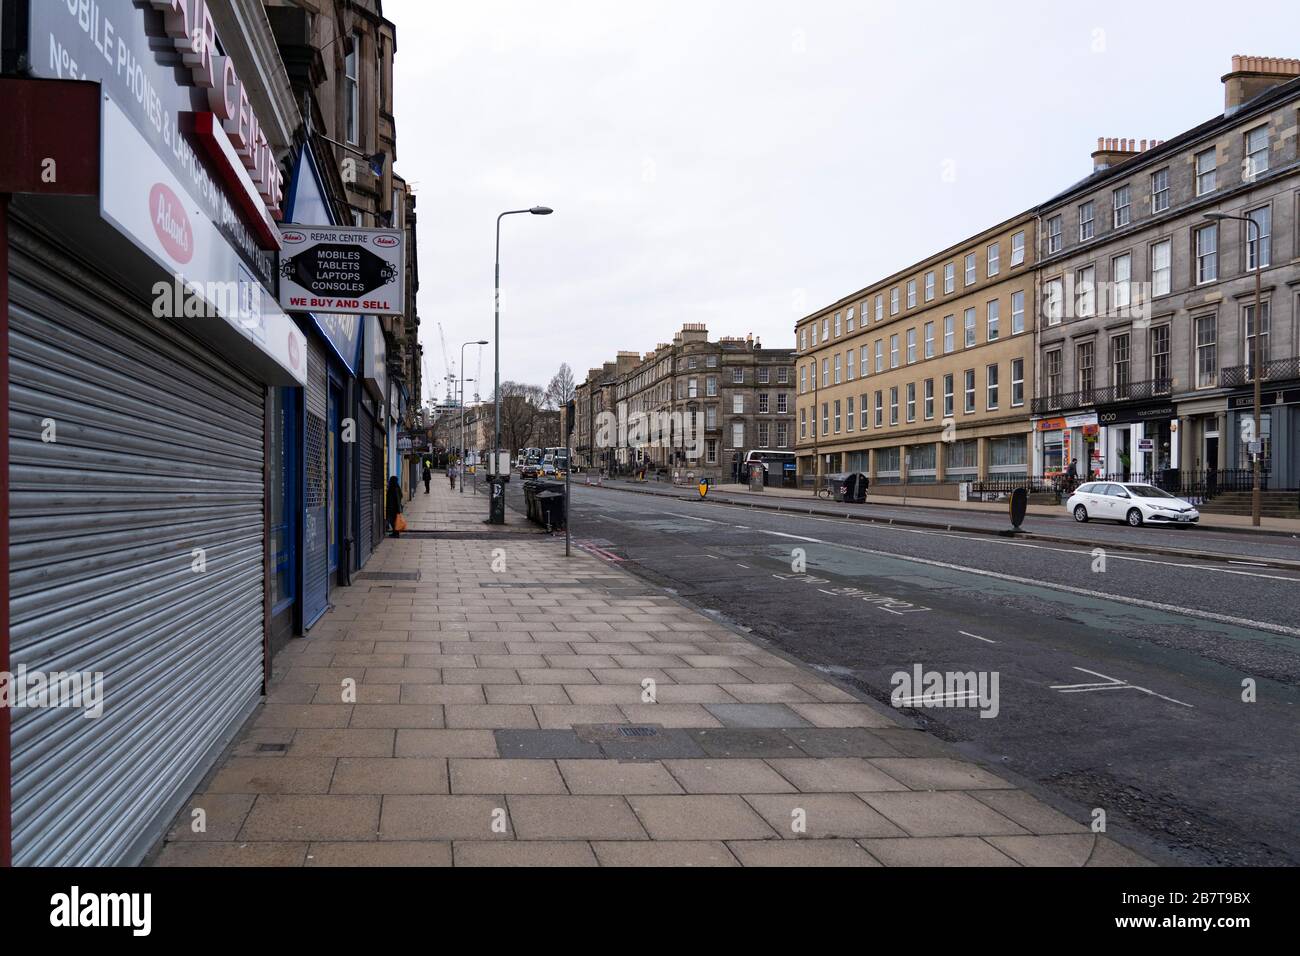 Édimbourg, Écosse, Royaume-Uni. 18 mars 2020. L'affolement du coronavirus mène à des rues vides à Édimbourg, comme Leith Walk montré pendant l'heure de pointe du matin normalement occupée. Édimbourg,. Iain Masterton/Alay Live News. Banque D'Images